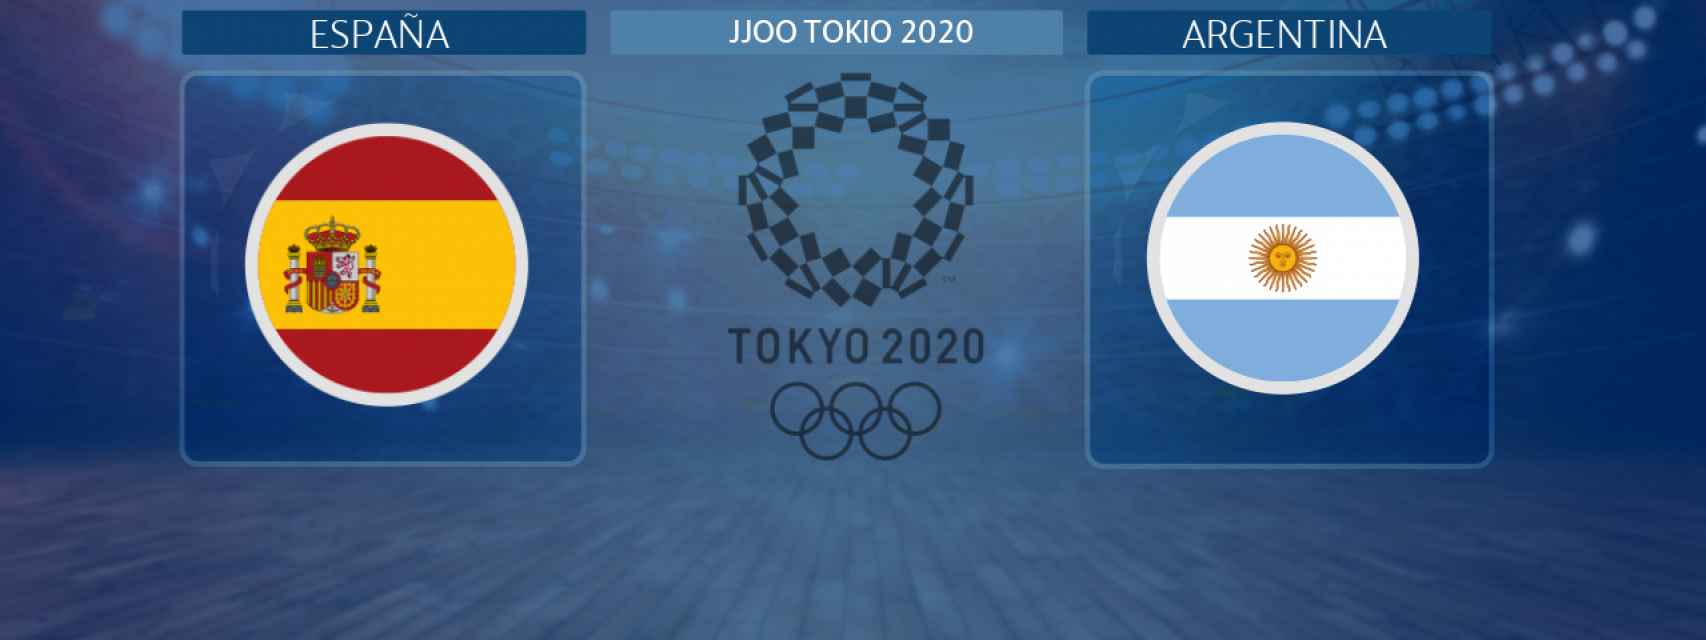 España - Argentina, partido de baloncesto masculino de los JJOO Tokio 2020